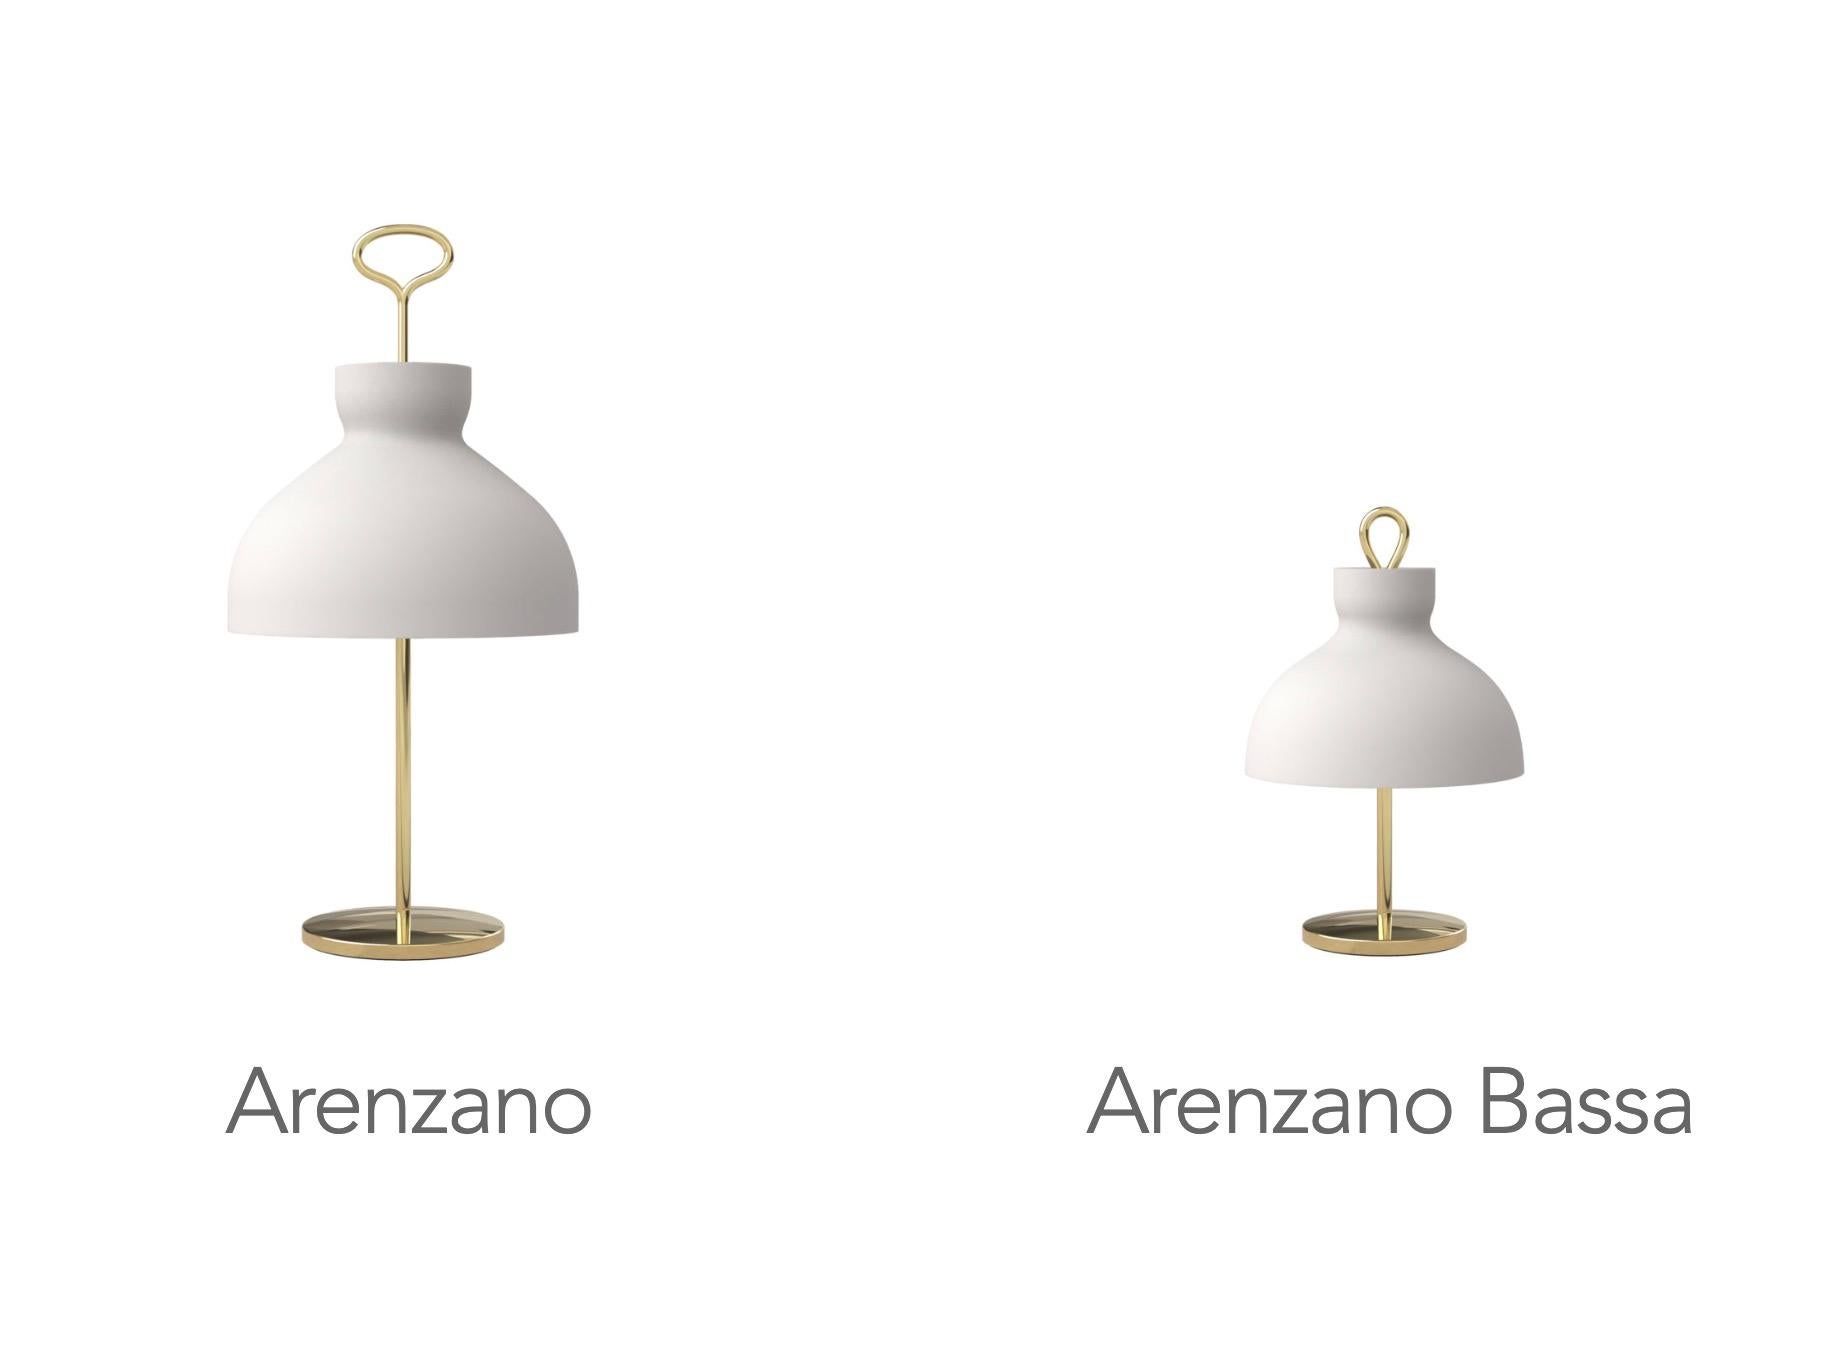 Ignazio Gardella 'Arenzano Bassa' Table Lamp in Brass and Glass For Sale 6